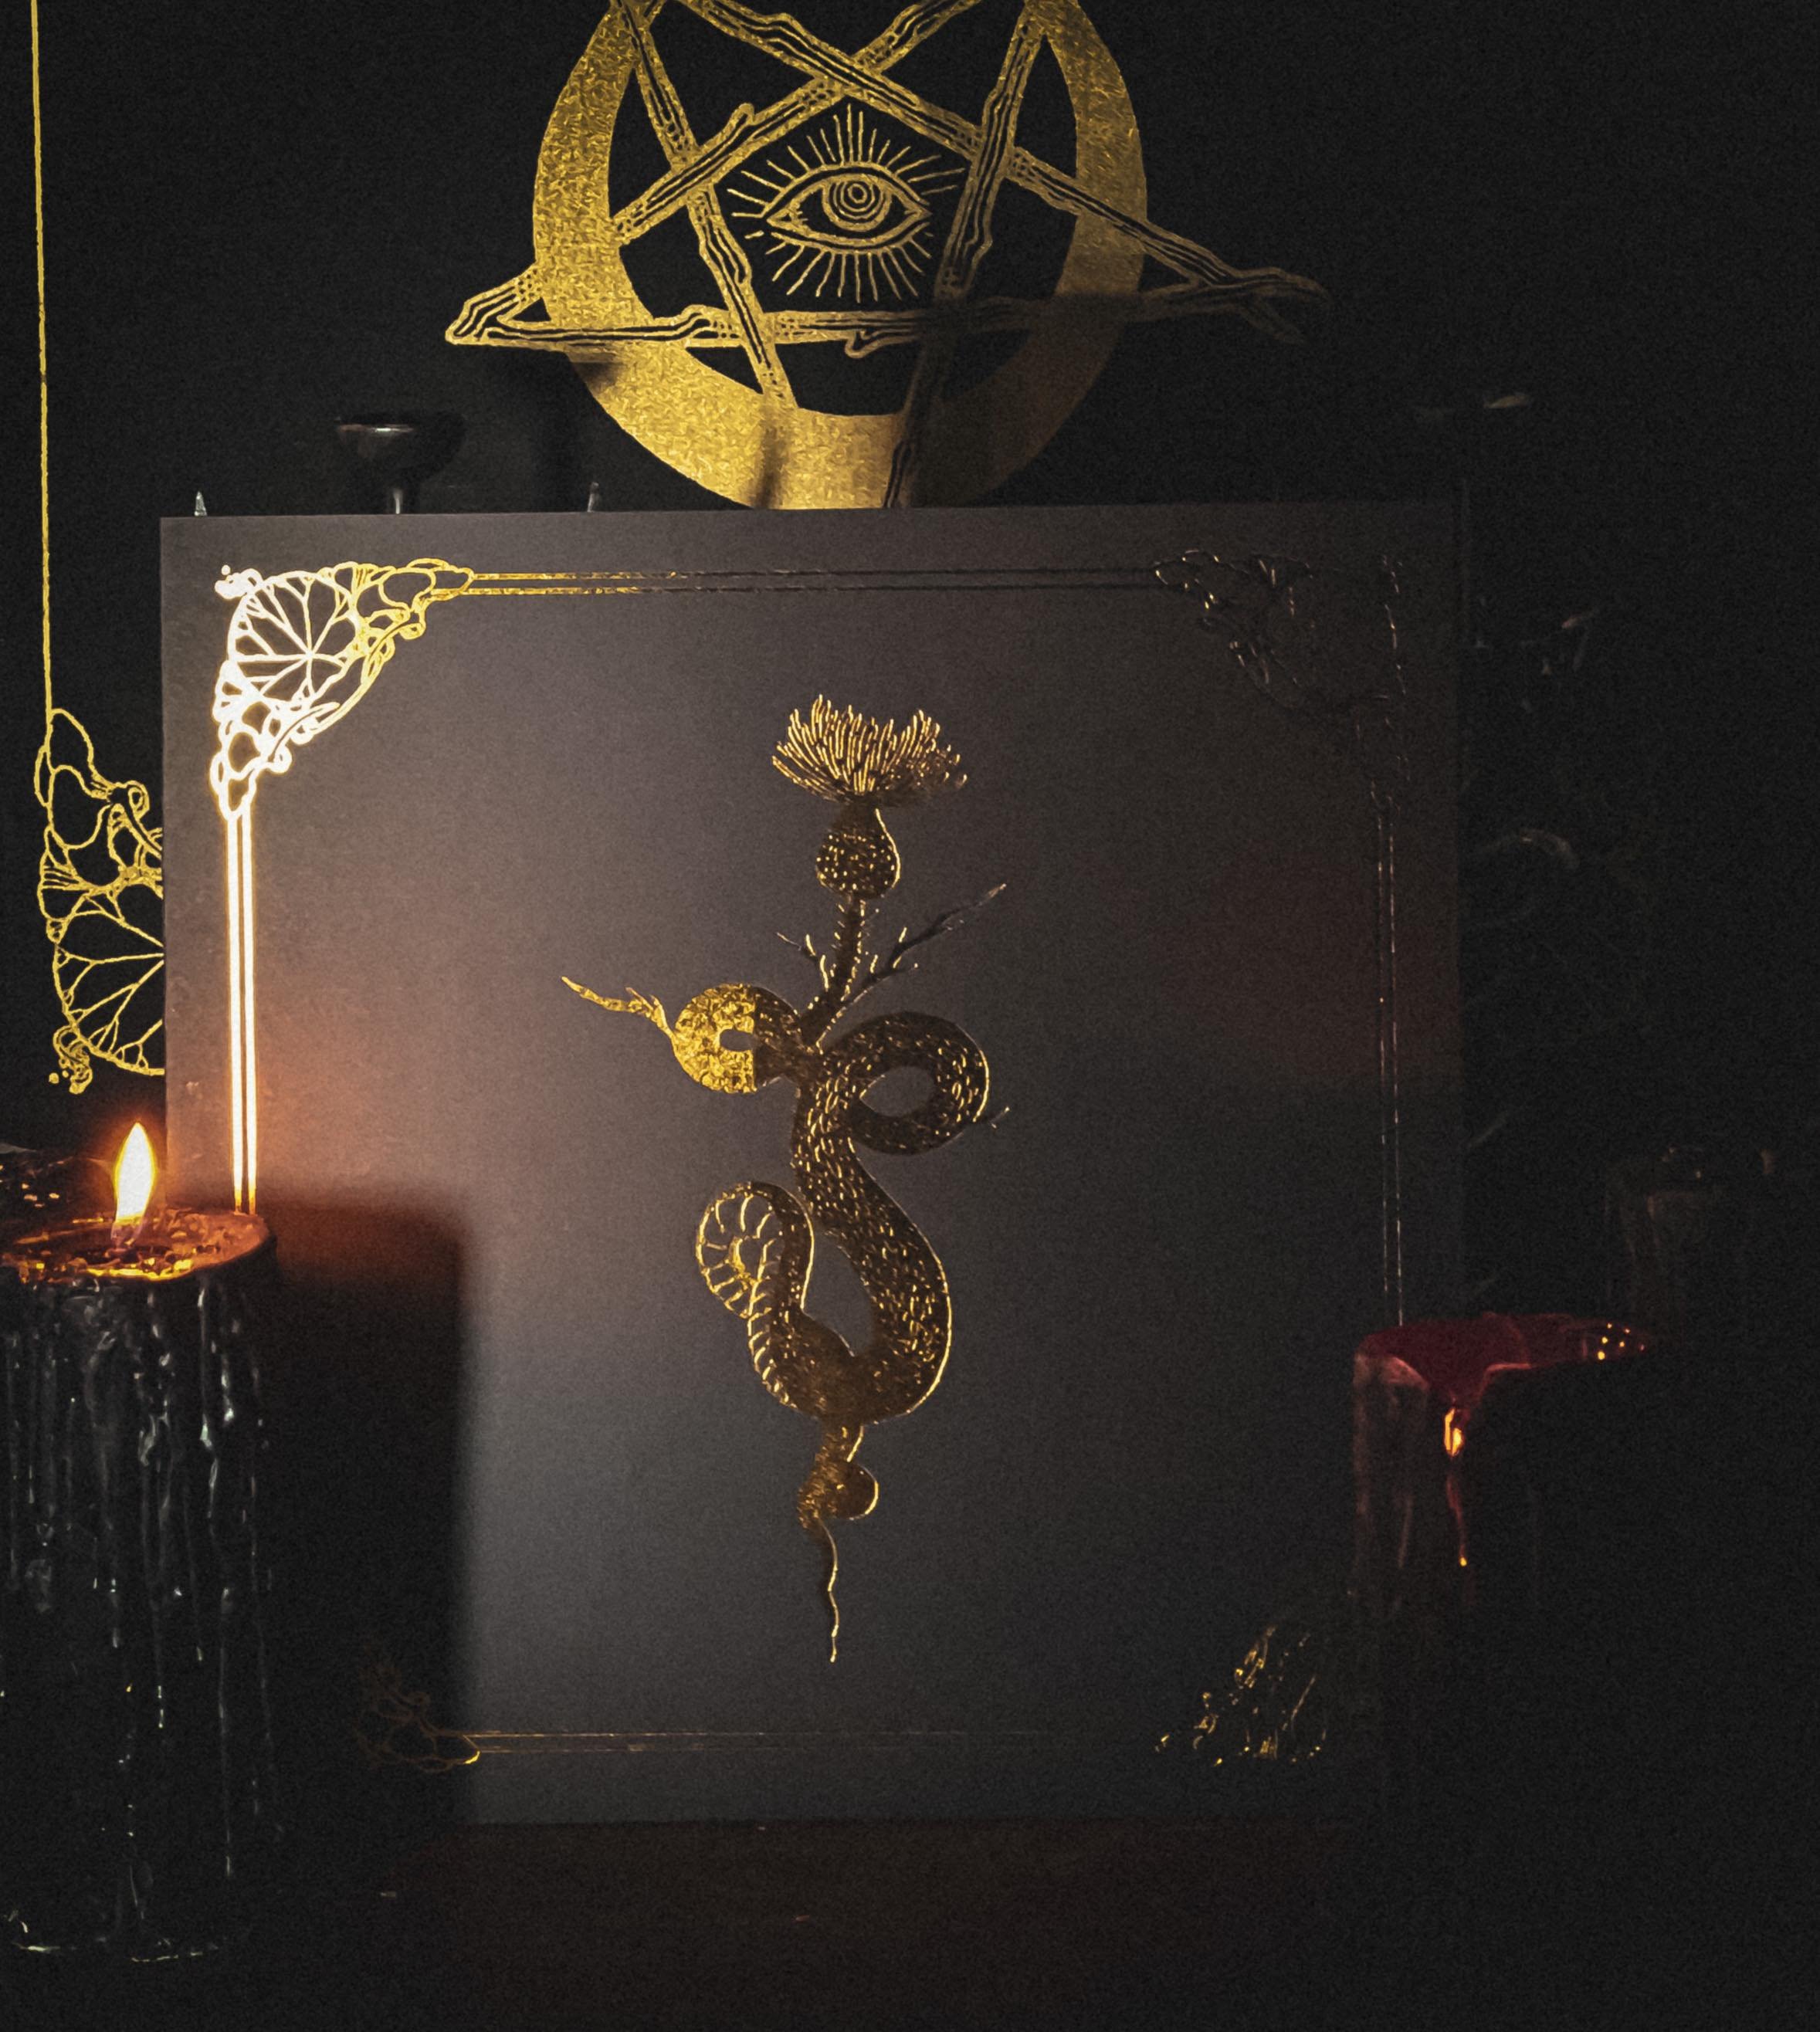  Devotion: Ritual Music Love, Loss &amp; Desire